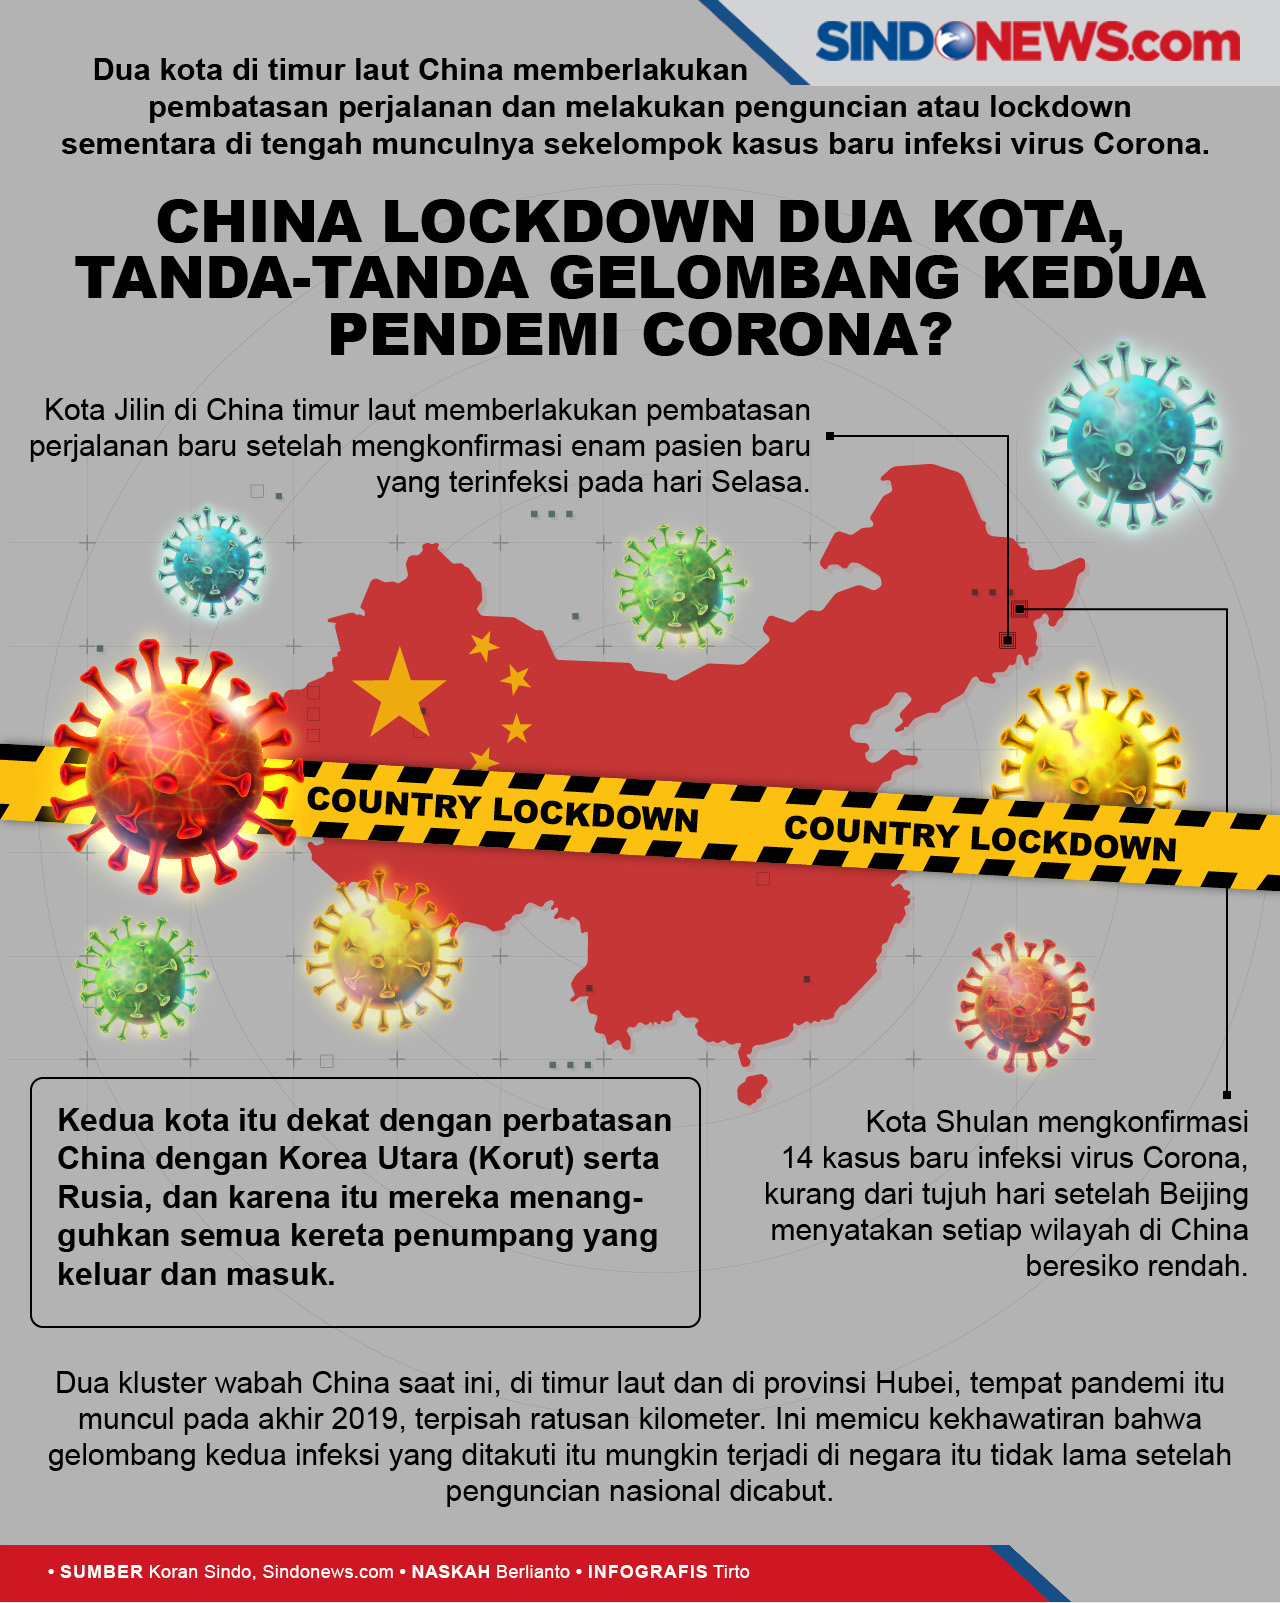 China Lockdown Dua Kota, Tandatanda Gelombang Kedua Pandemi...